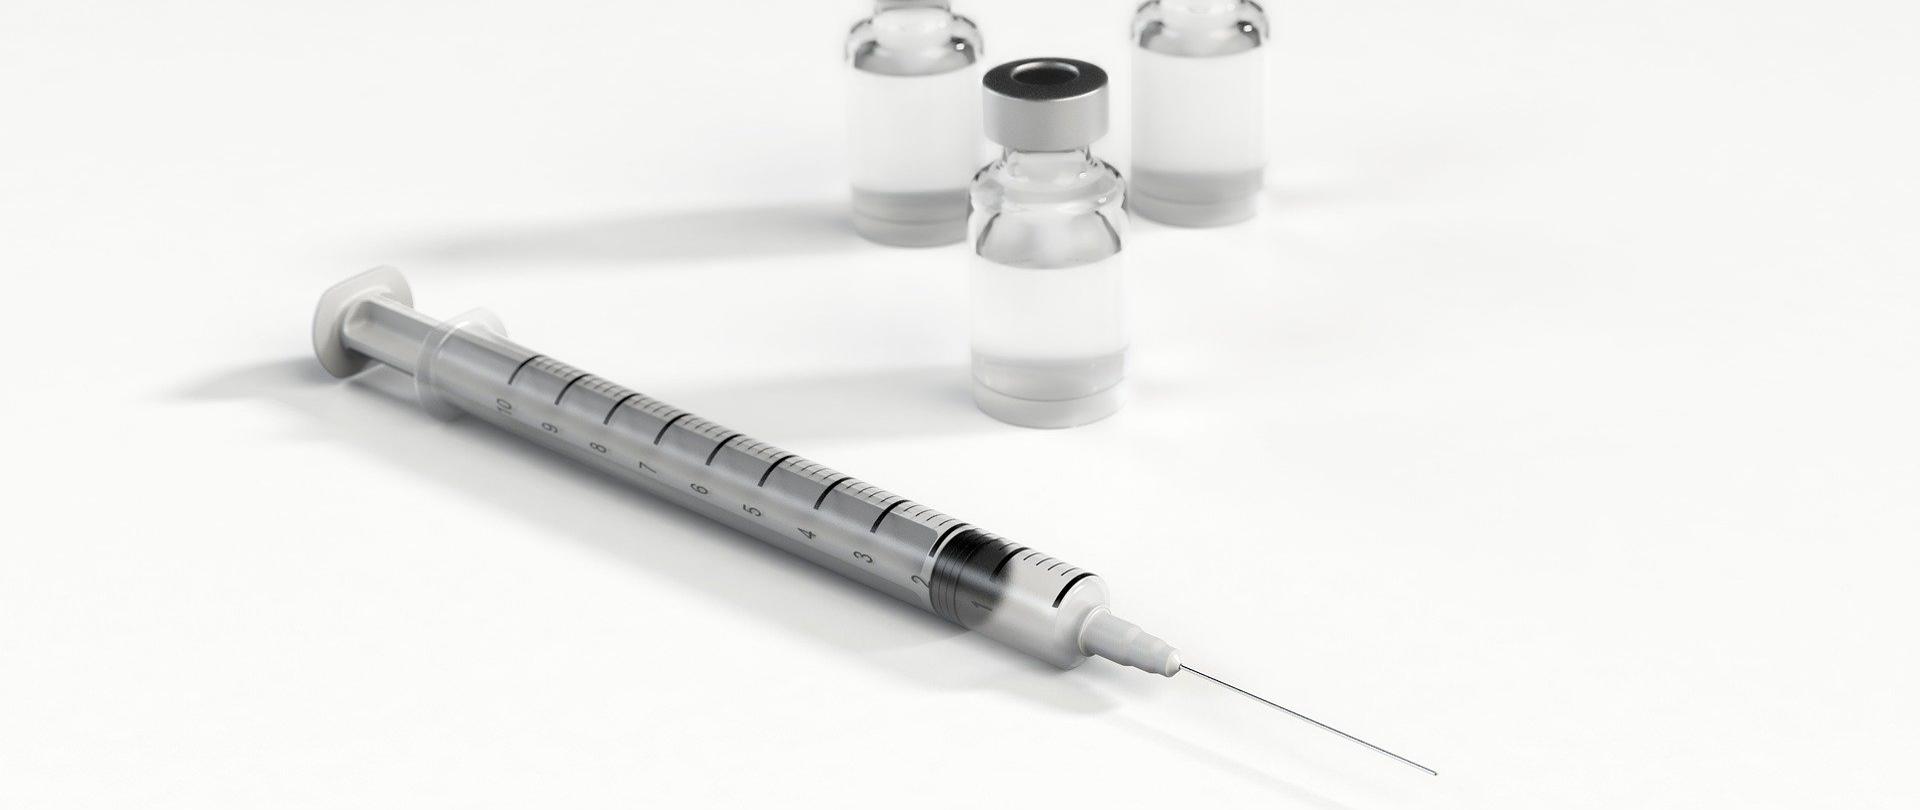 Zdjęcie przedstawia strzykawkę oraz ampułki z lekami.